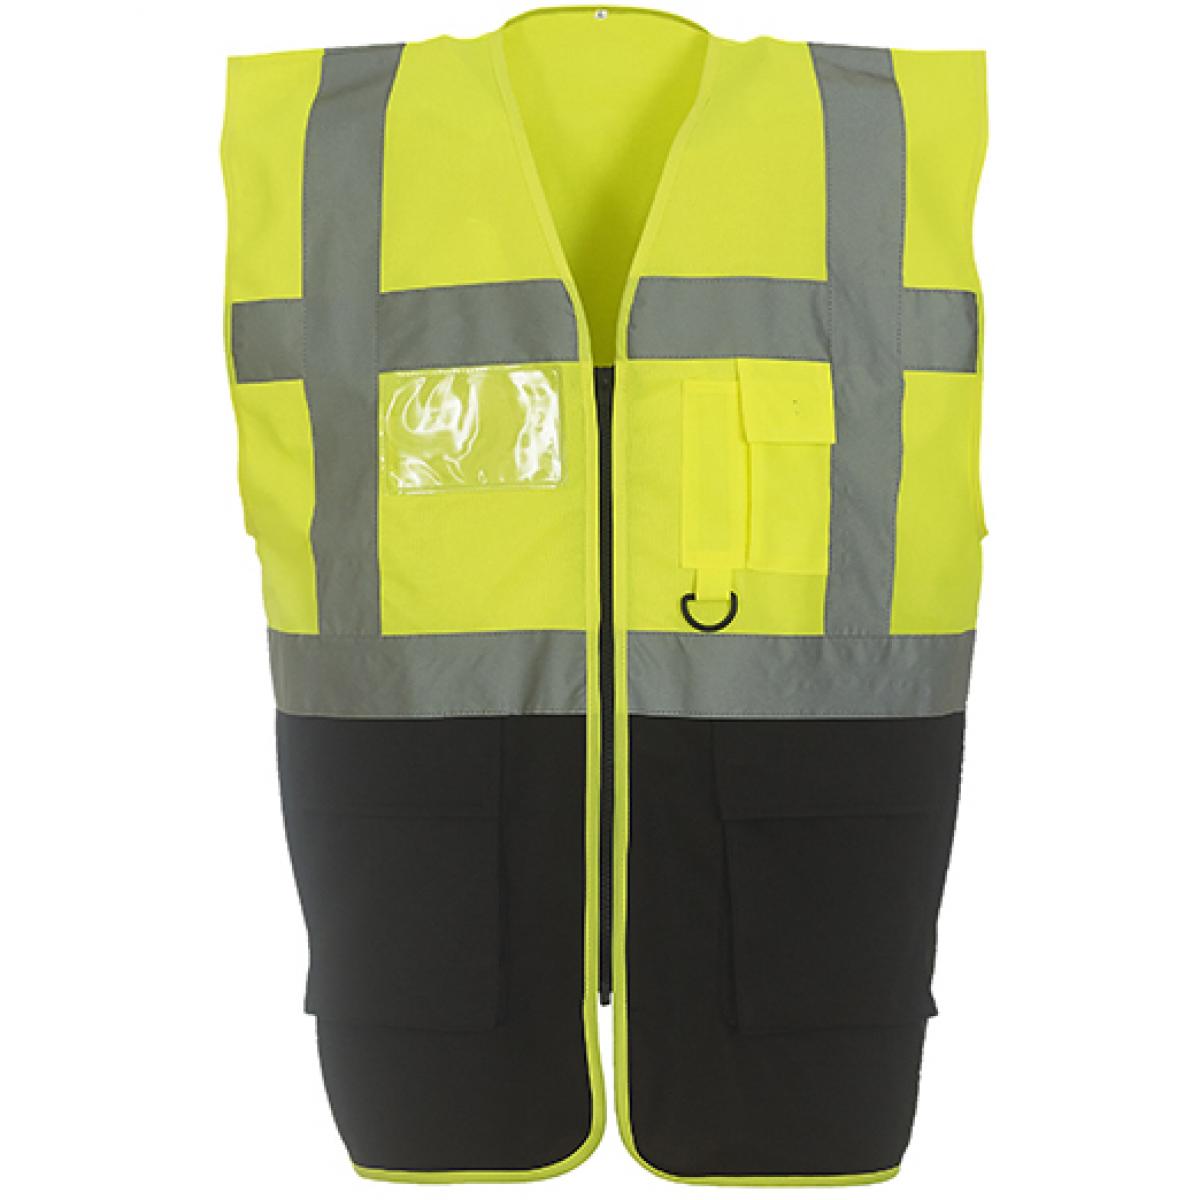 Hersteller: YOKO Herstellernummer: HVW801 Artikelbezeichnung: Herren Multi-Functional Executive Waistcoat Farbe: Hi-Vis Yellow/Black